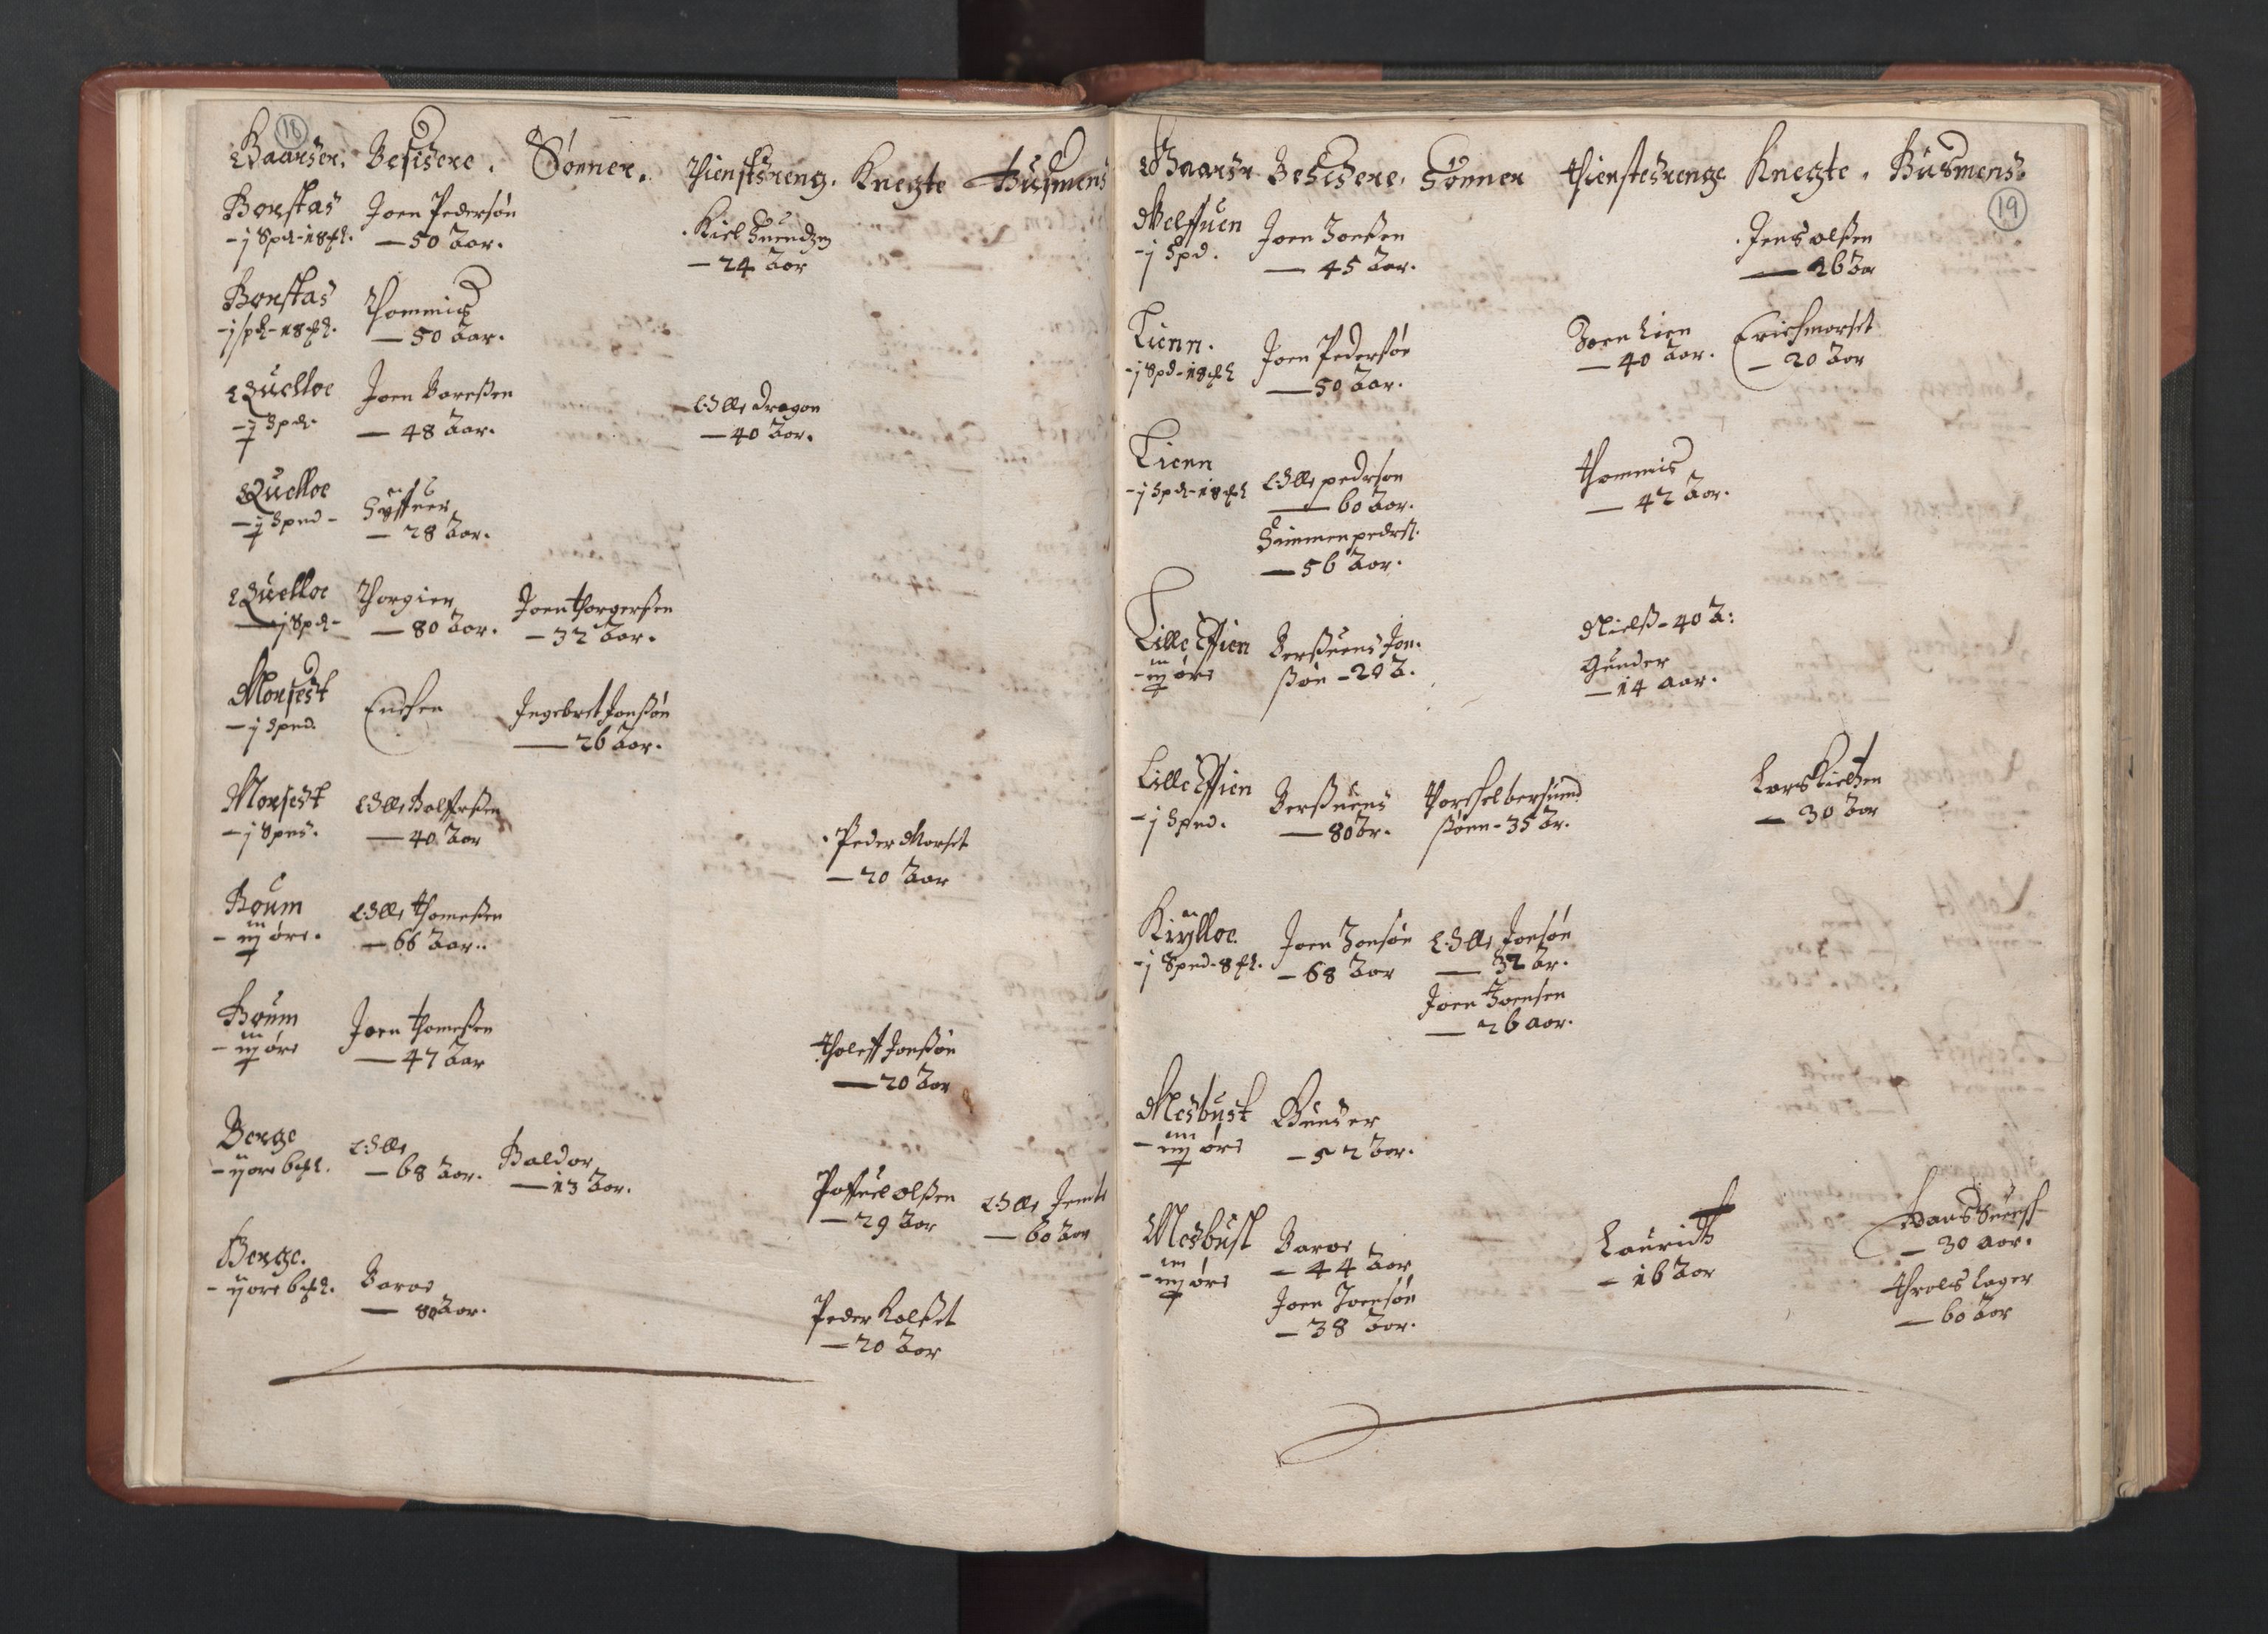 RA, Fogdenes og sorenskrivernes manntall 1664-1666, nr. 19: Fosen fogderi, Inderøy fogderi, Selbu fogderi, Namdal fogderi og Stjørdal fogderi, 1664-1665, s. 18-19